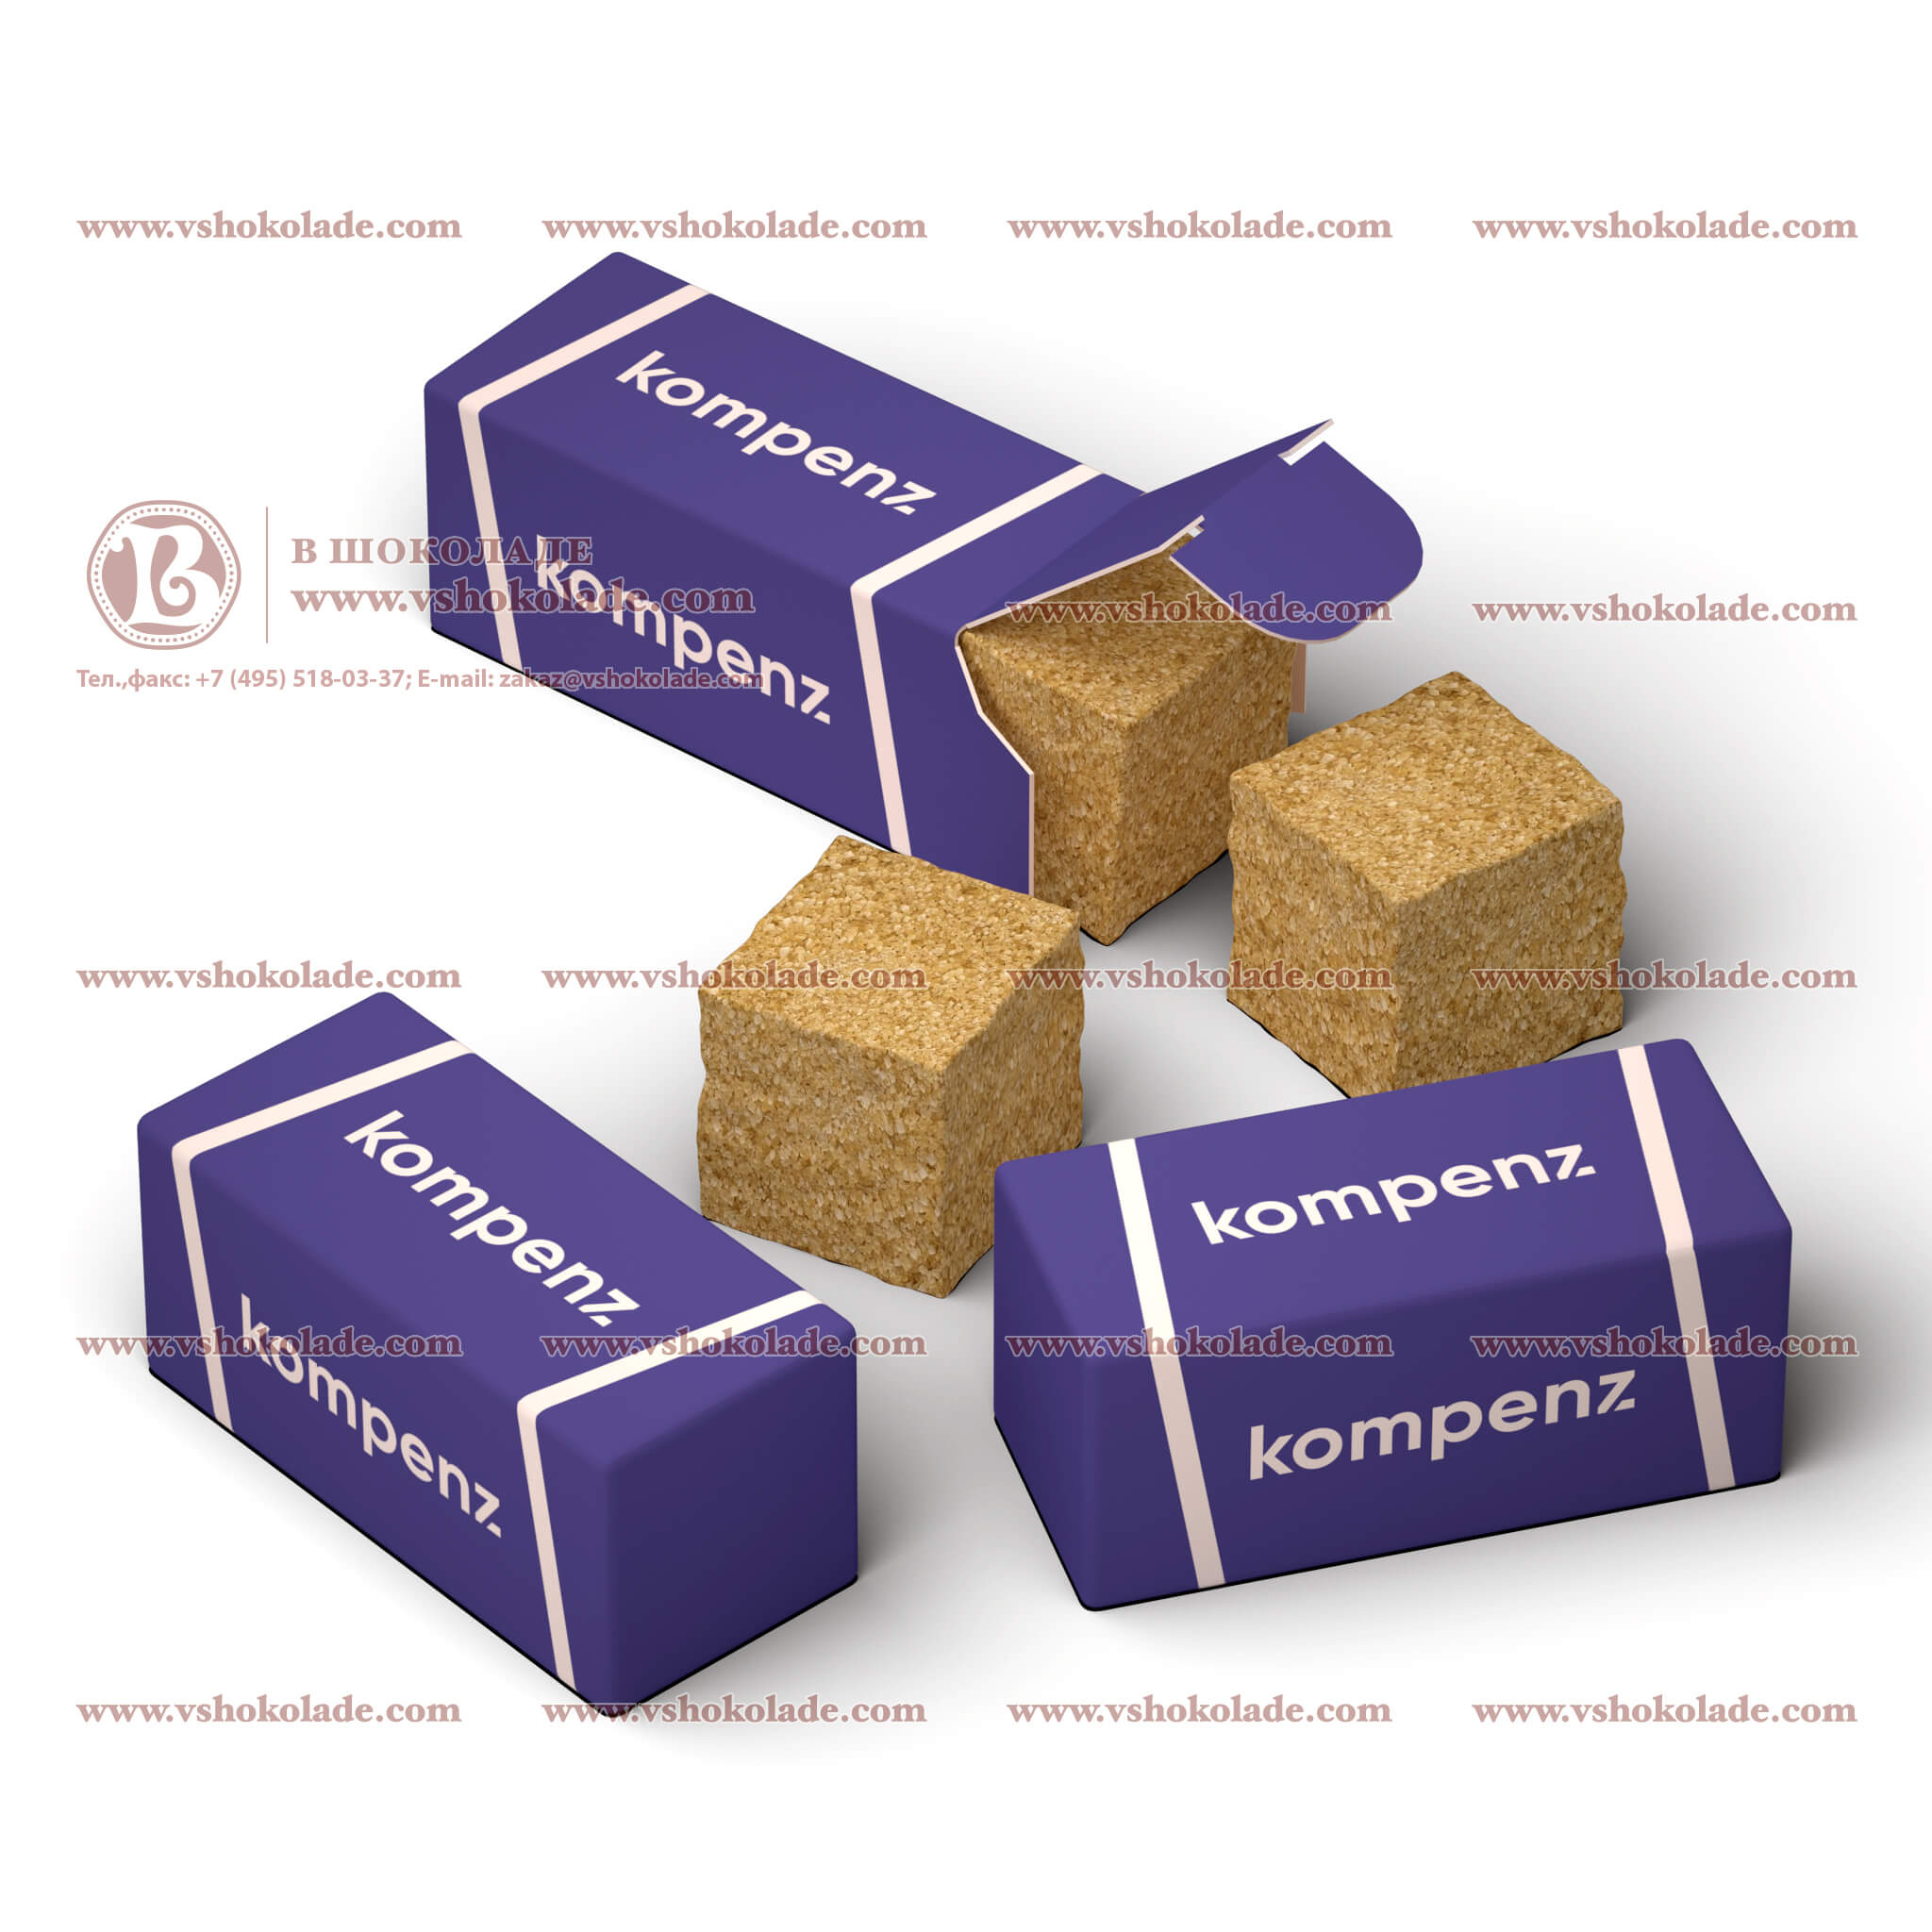 VIP сахар с логотипом. Кусковой, в формате двух кубиков упакованных в брендированную коробочку